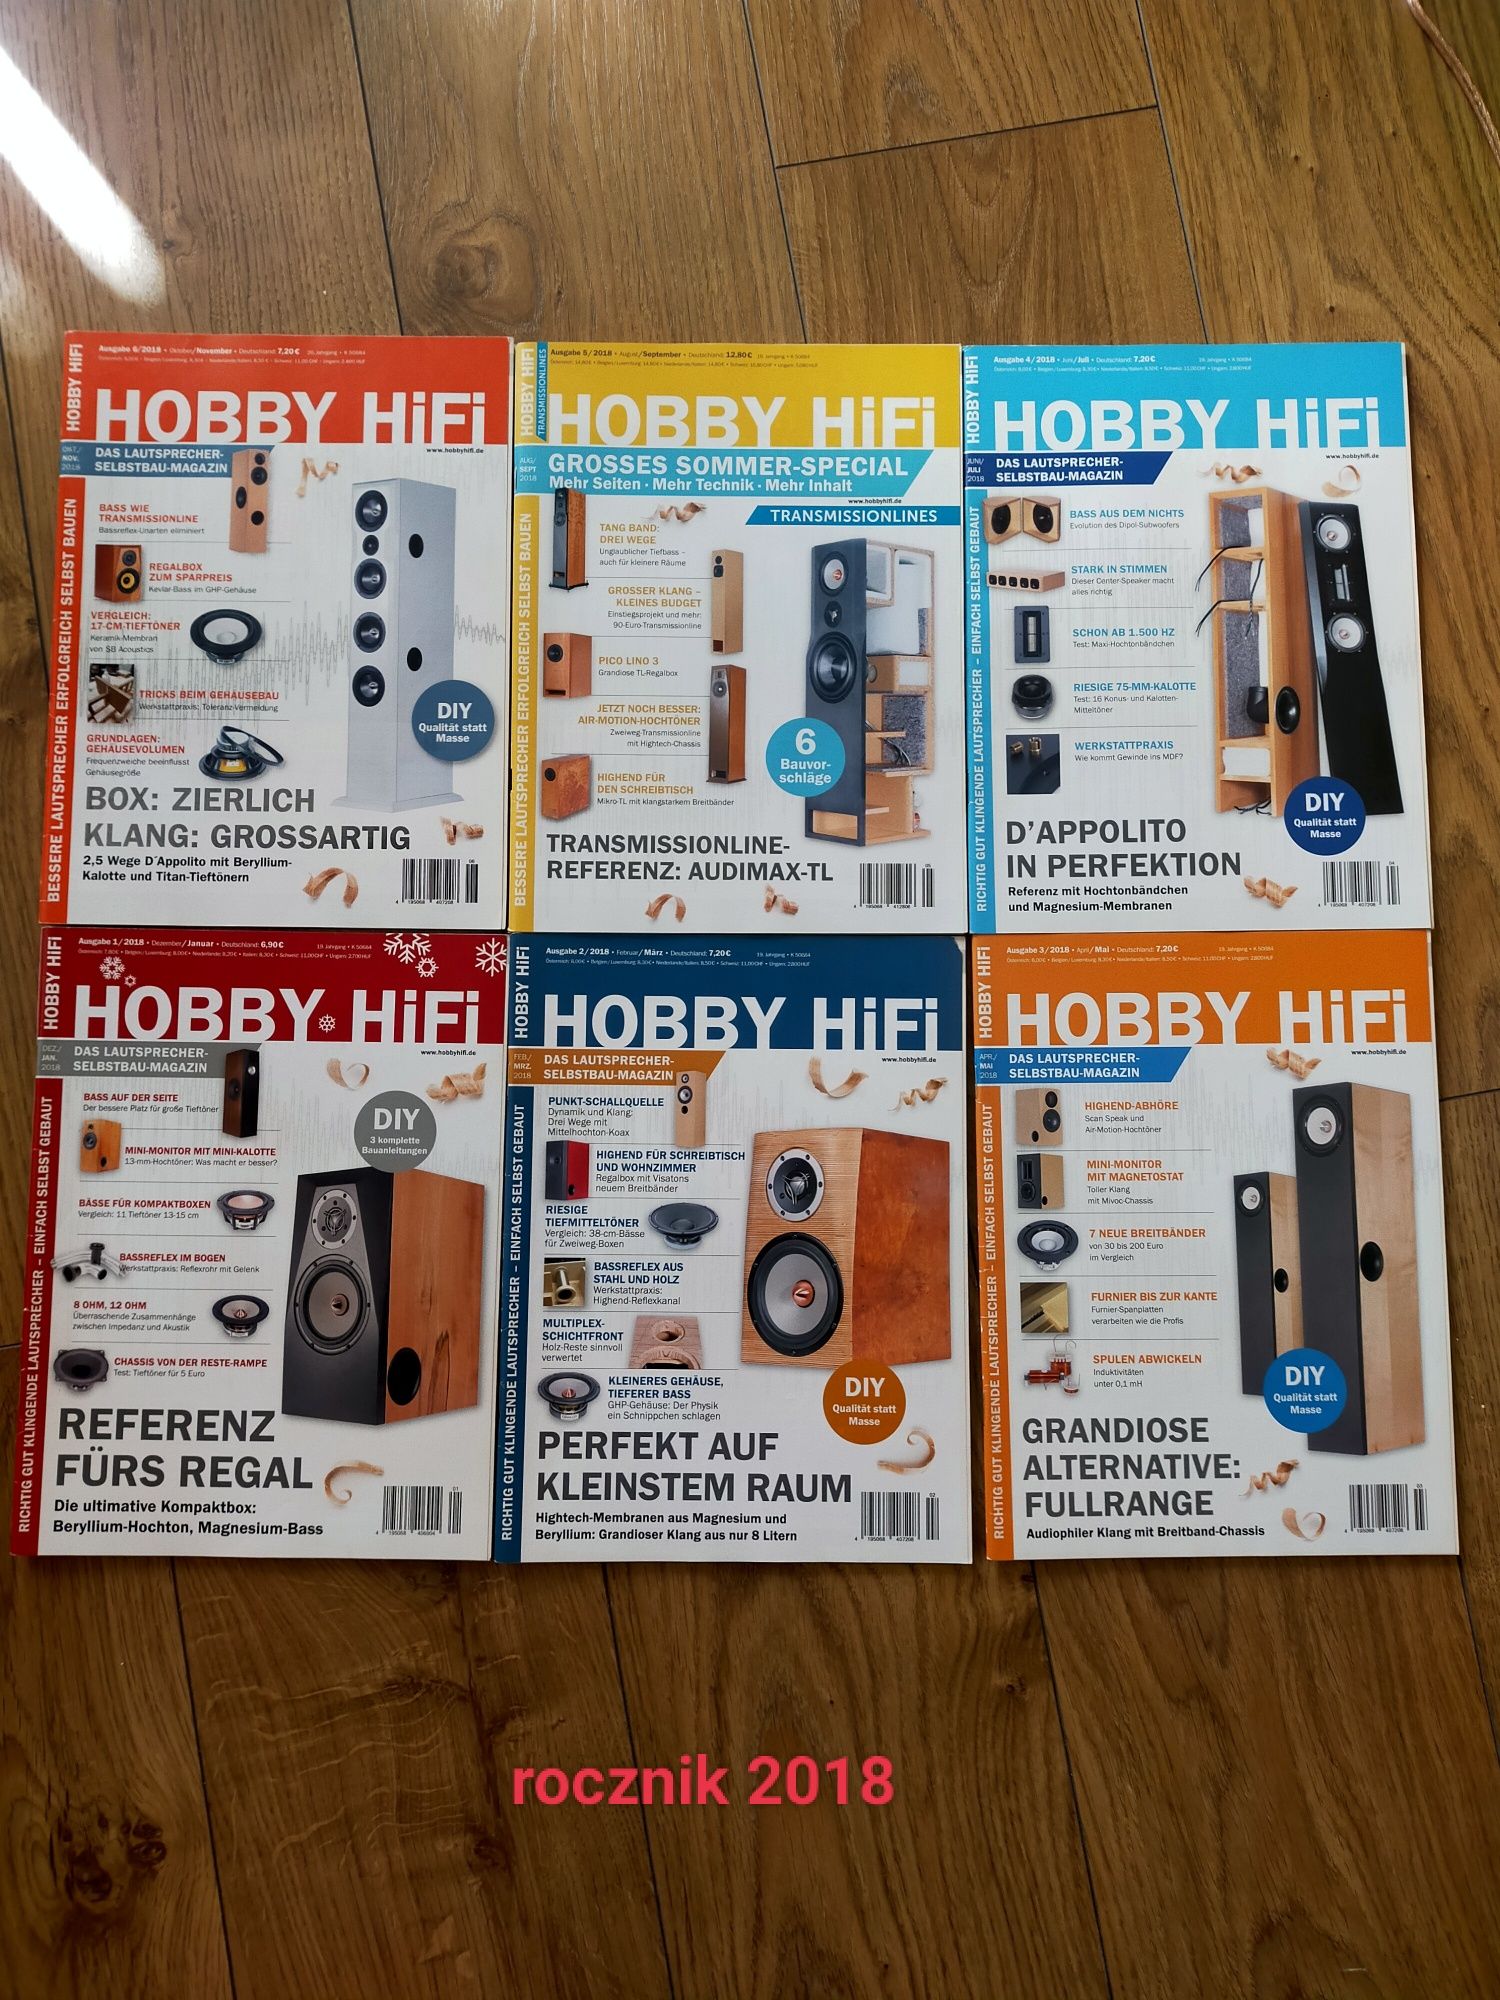 Roczniki czasopisma Hobby HiFi 2012 do 2019